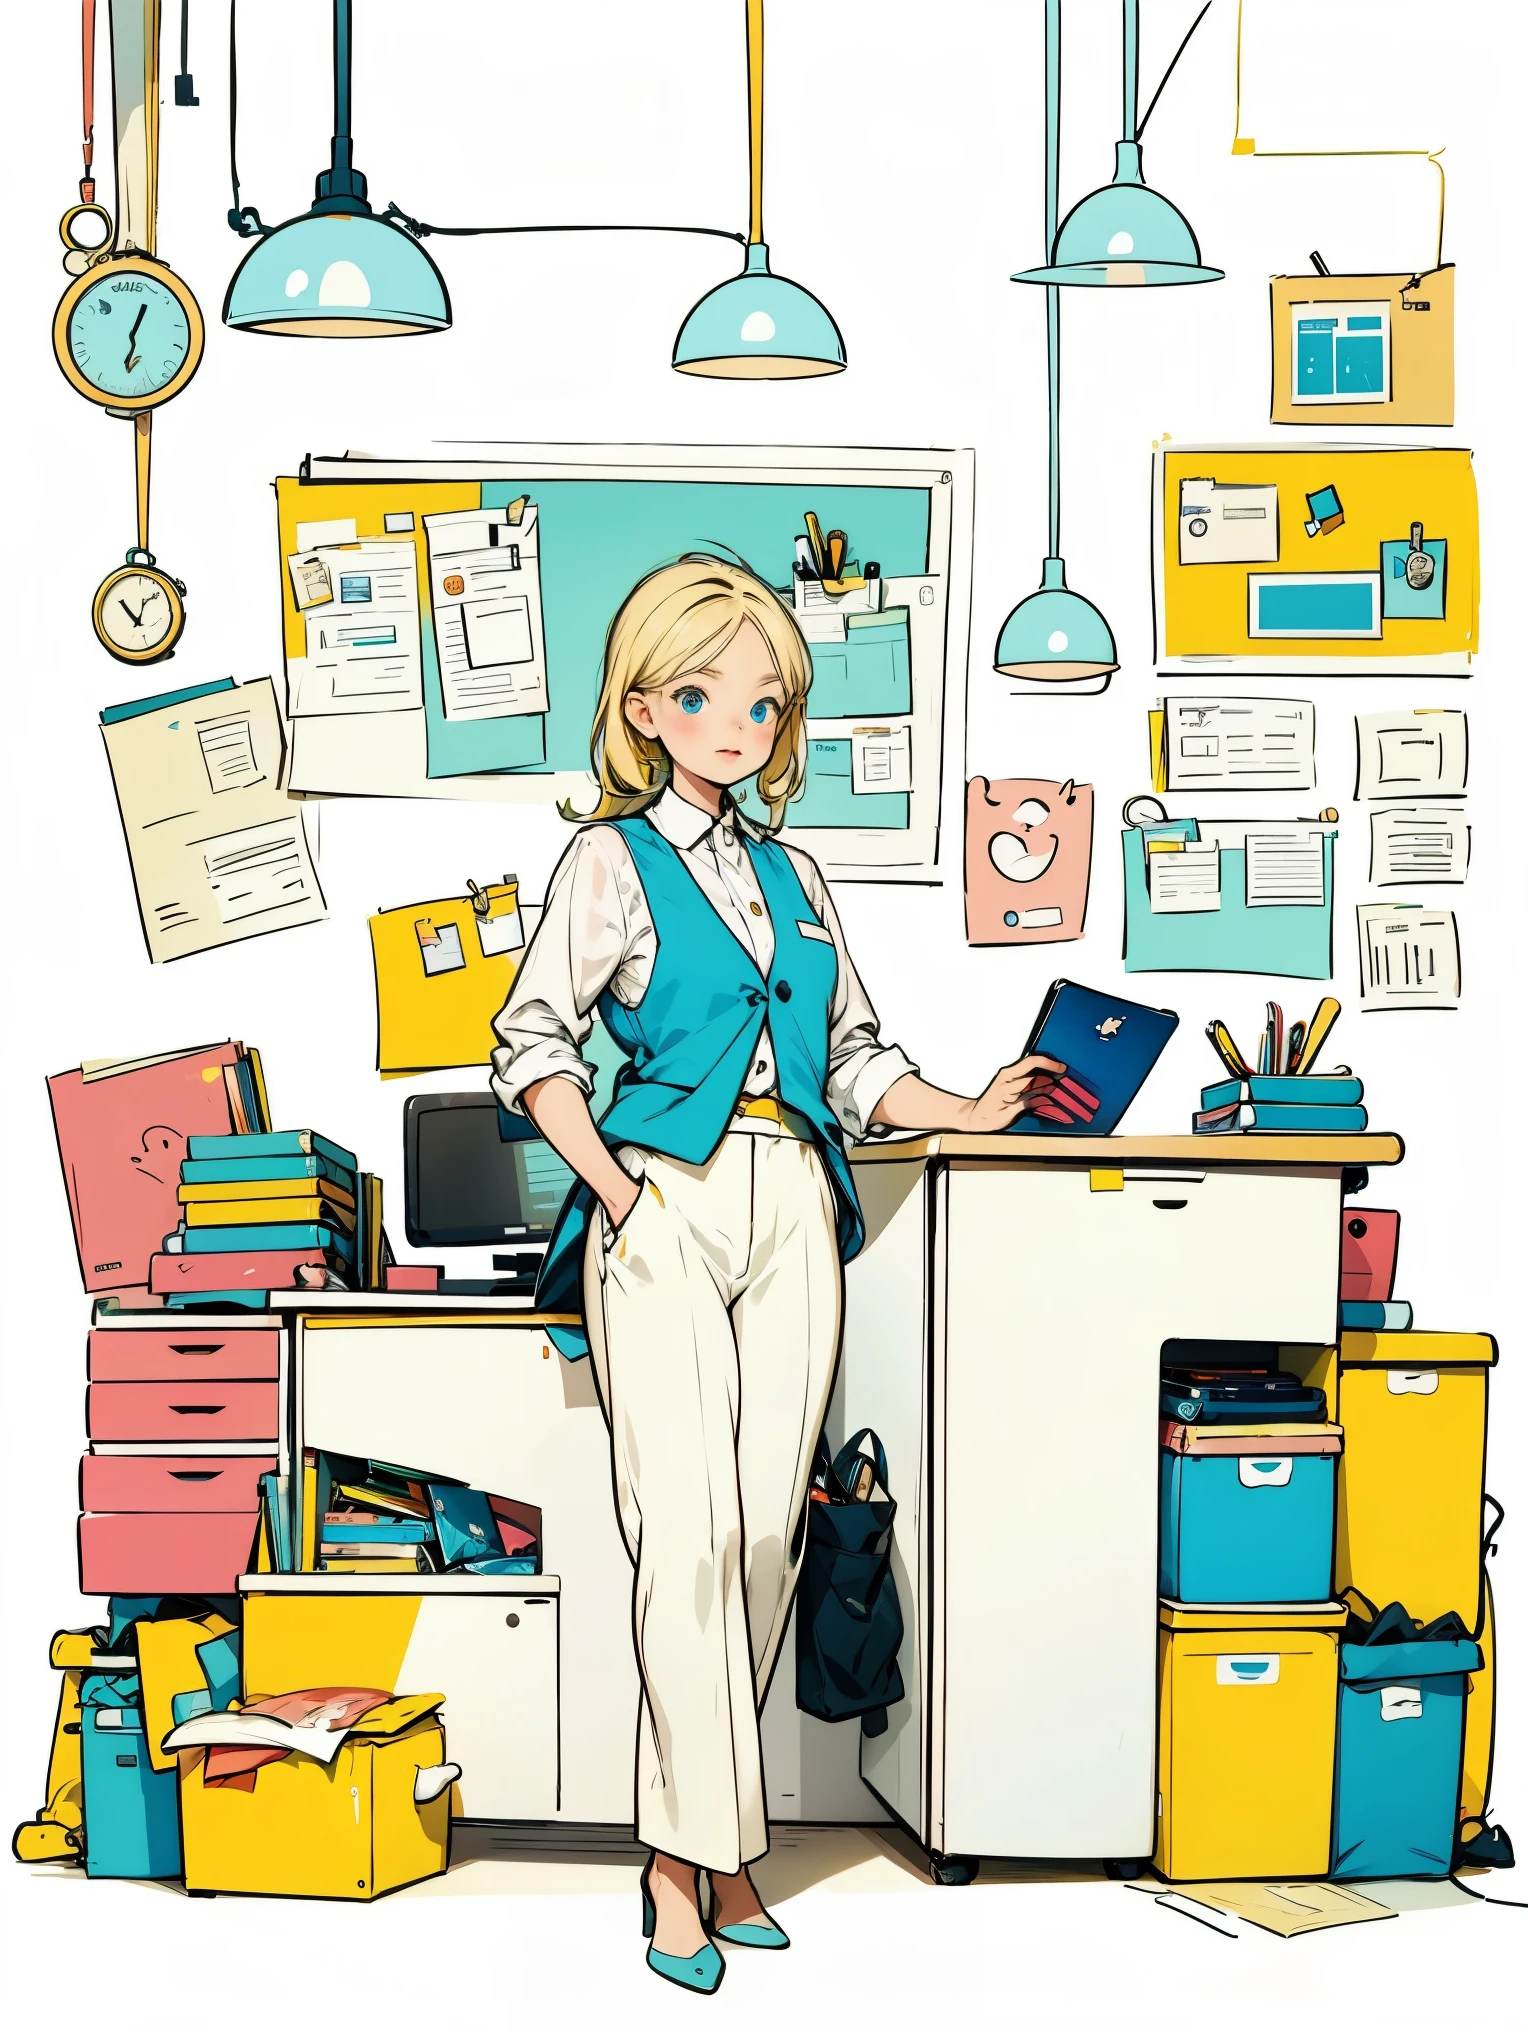 1 девушка в белой рубашке и синем жилете,брюки,стоя,работа в офисе,длинные волосы,улыбка,простой фон